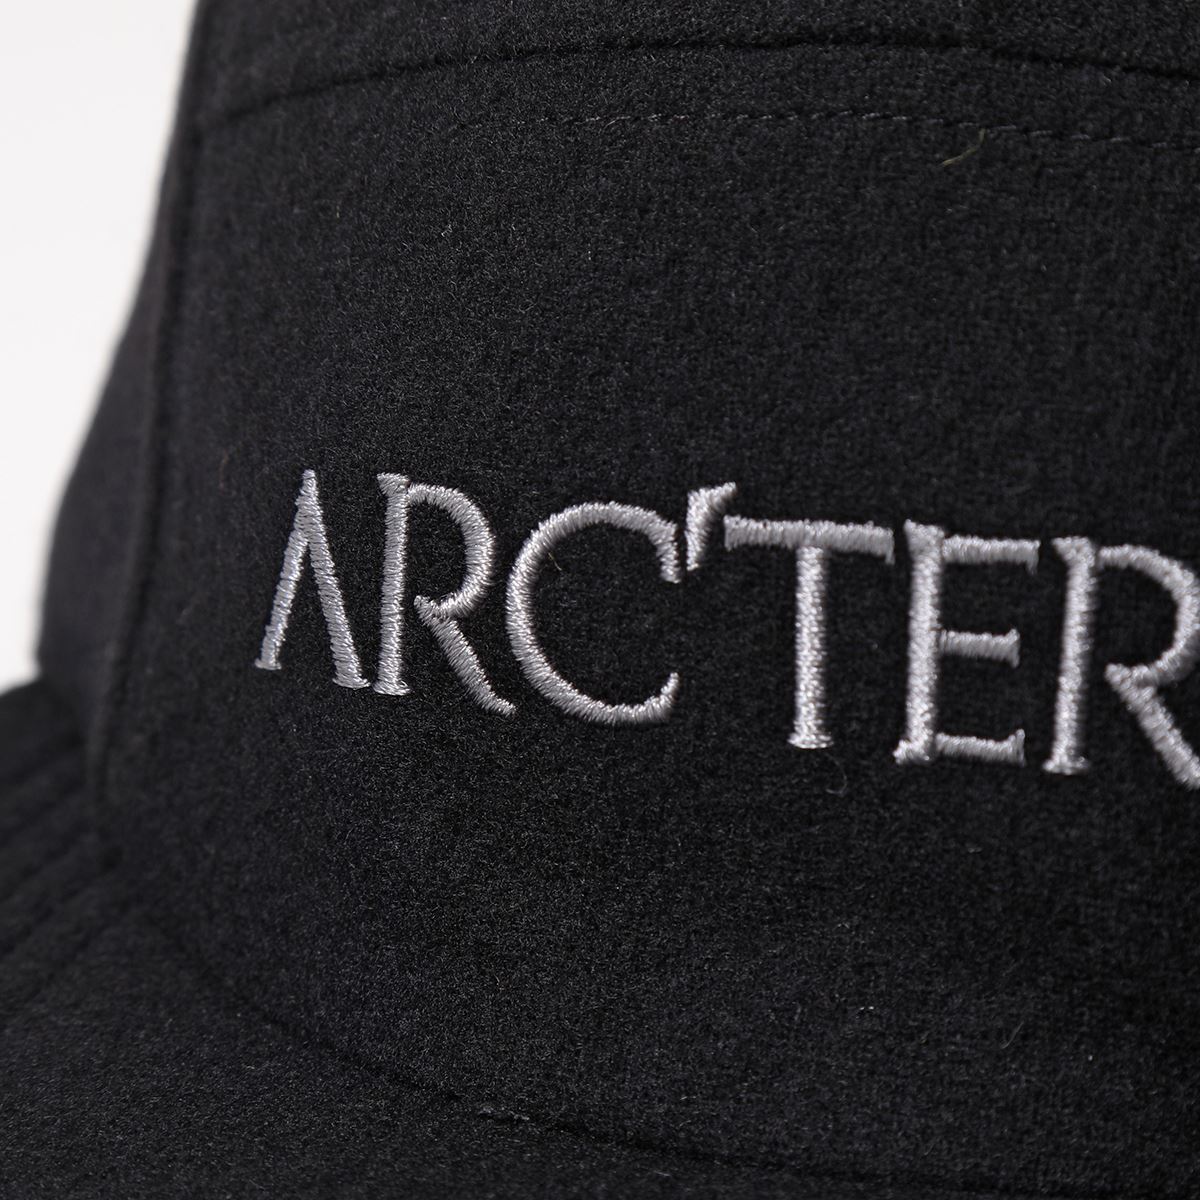 ARCTERYX アークテリクス 5パネル ウールキャップ 28127 5Panel Wool Hat メンズ ジェットキャップ 帽子 ロゴ刺繍  Black-Heather | インポートセレクト musee